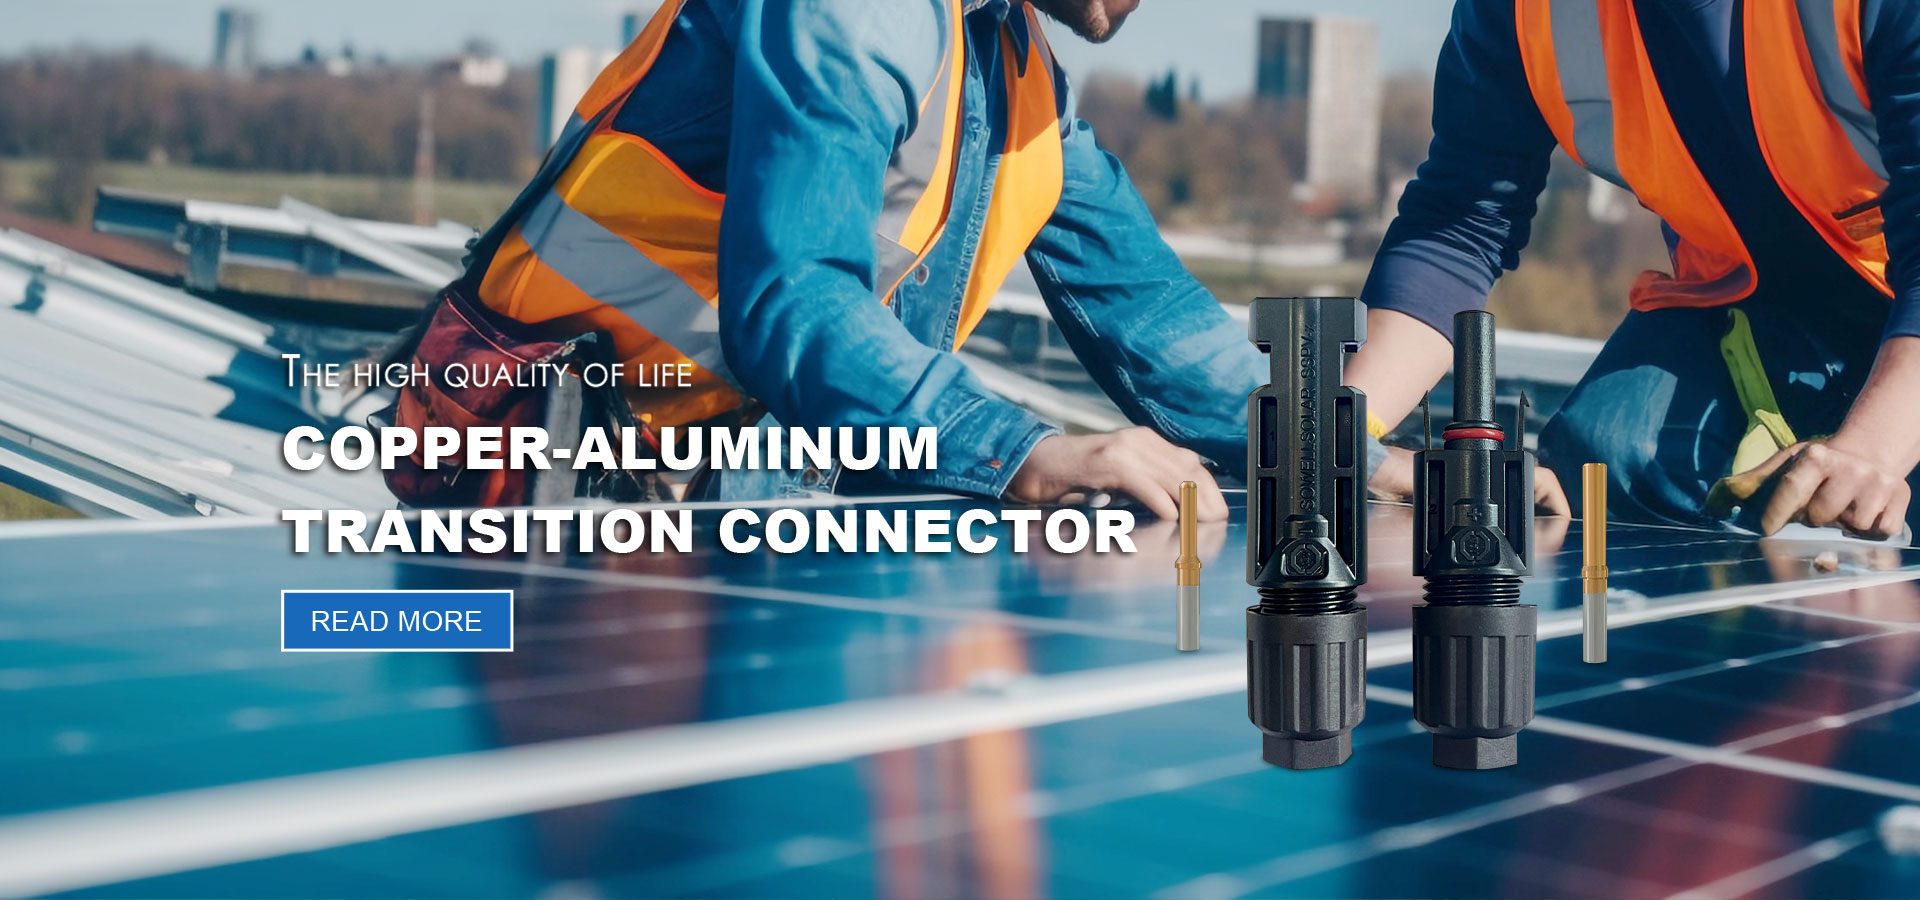 Aluminium Alloy Cable solaris Manufacturers et Suppliers